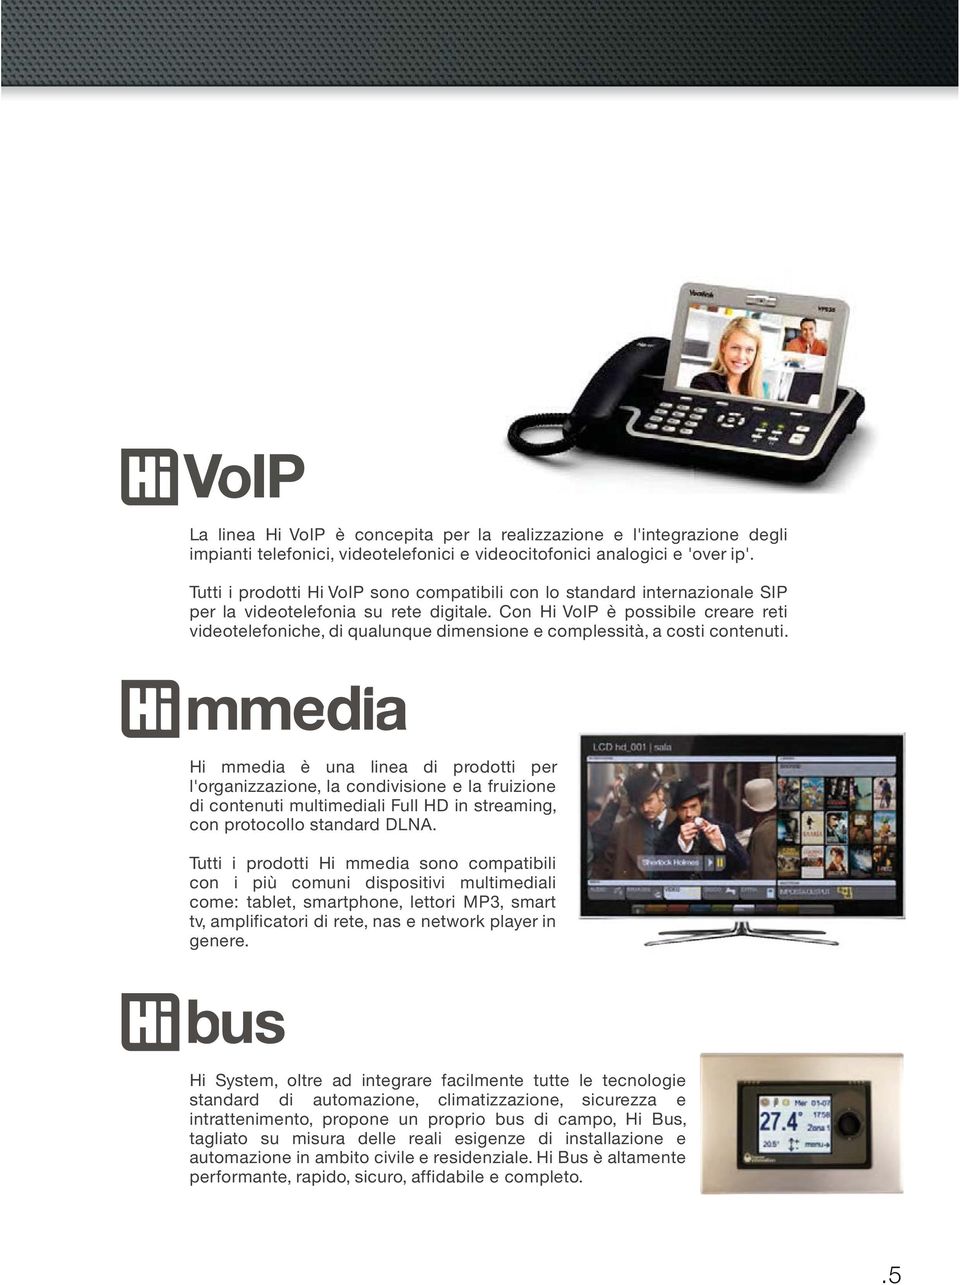 Con Hi VoIP è possibile creare reti videotelefoniche, di qualunque dimensione e complessità, a costi contenuti.